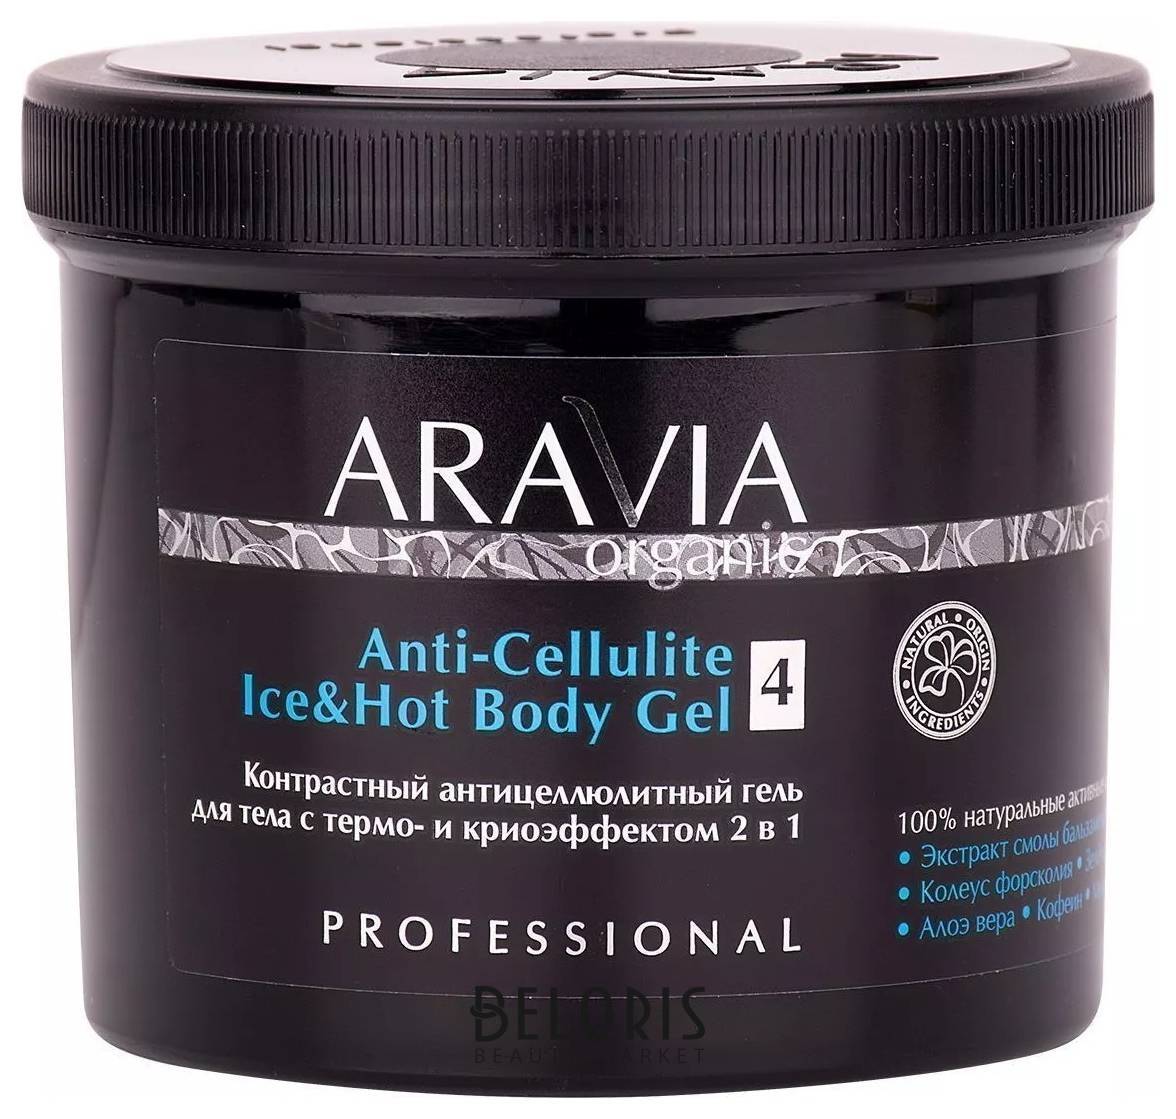 Контрастный антицеллюлитный гель для тела с термо- и криоэффектом 2 в 1 Anti-Cellulite Ice&Hot Body Gel Aravia Professional Aravia Organic